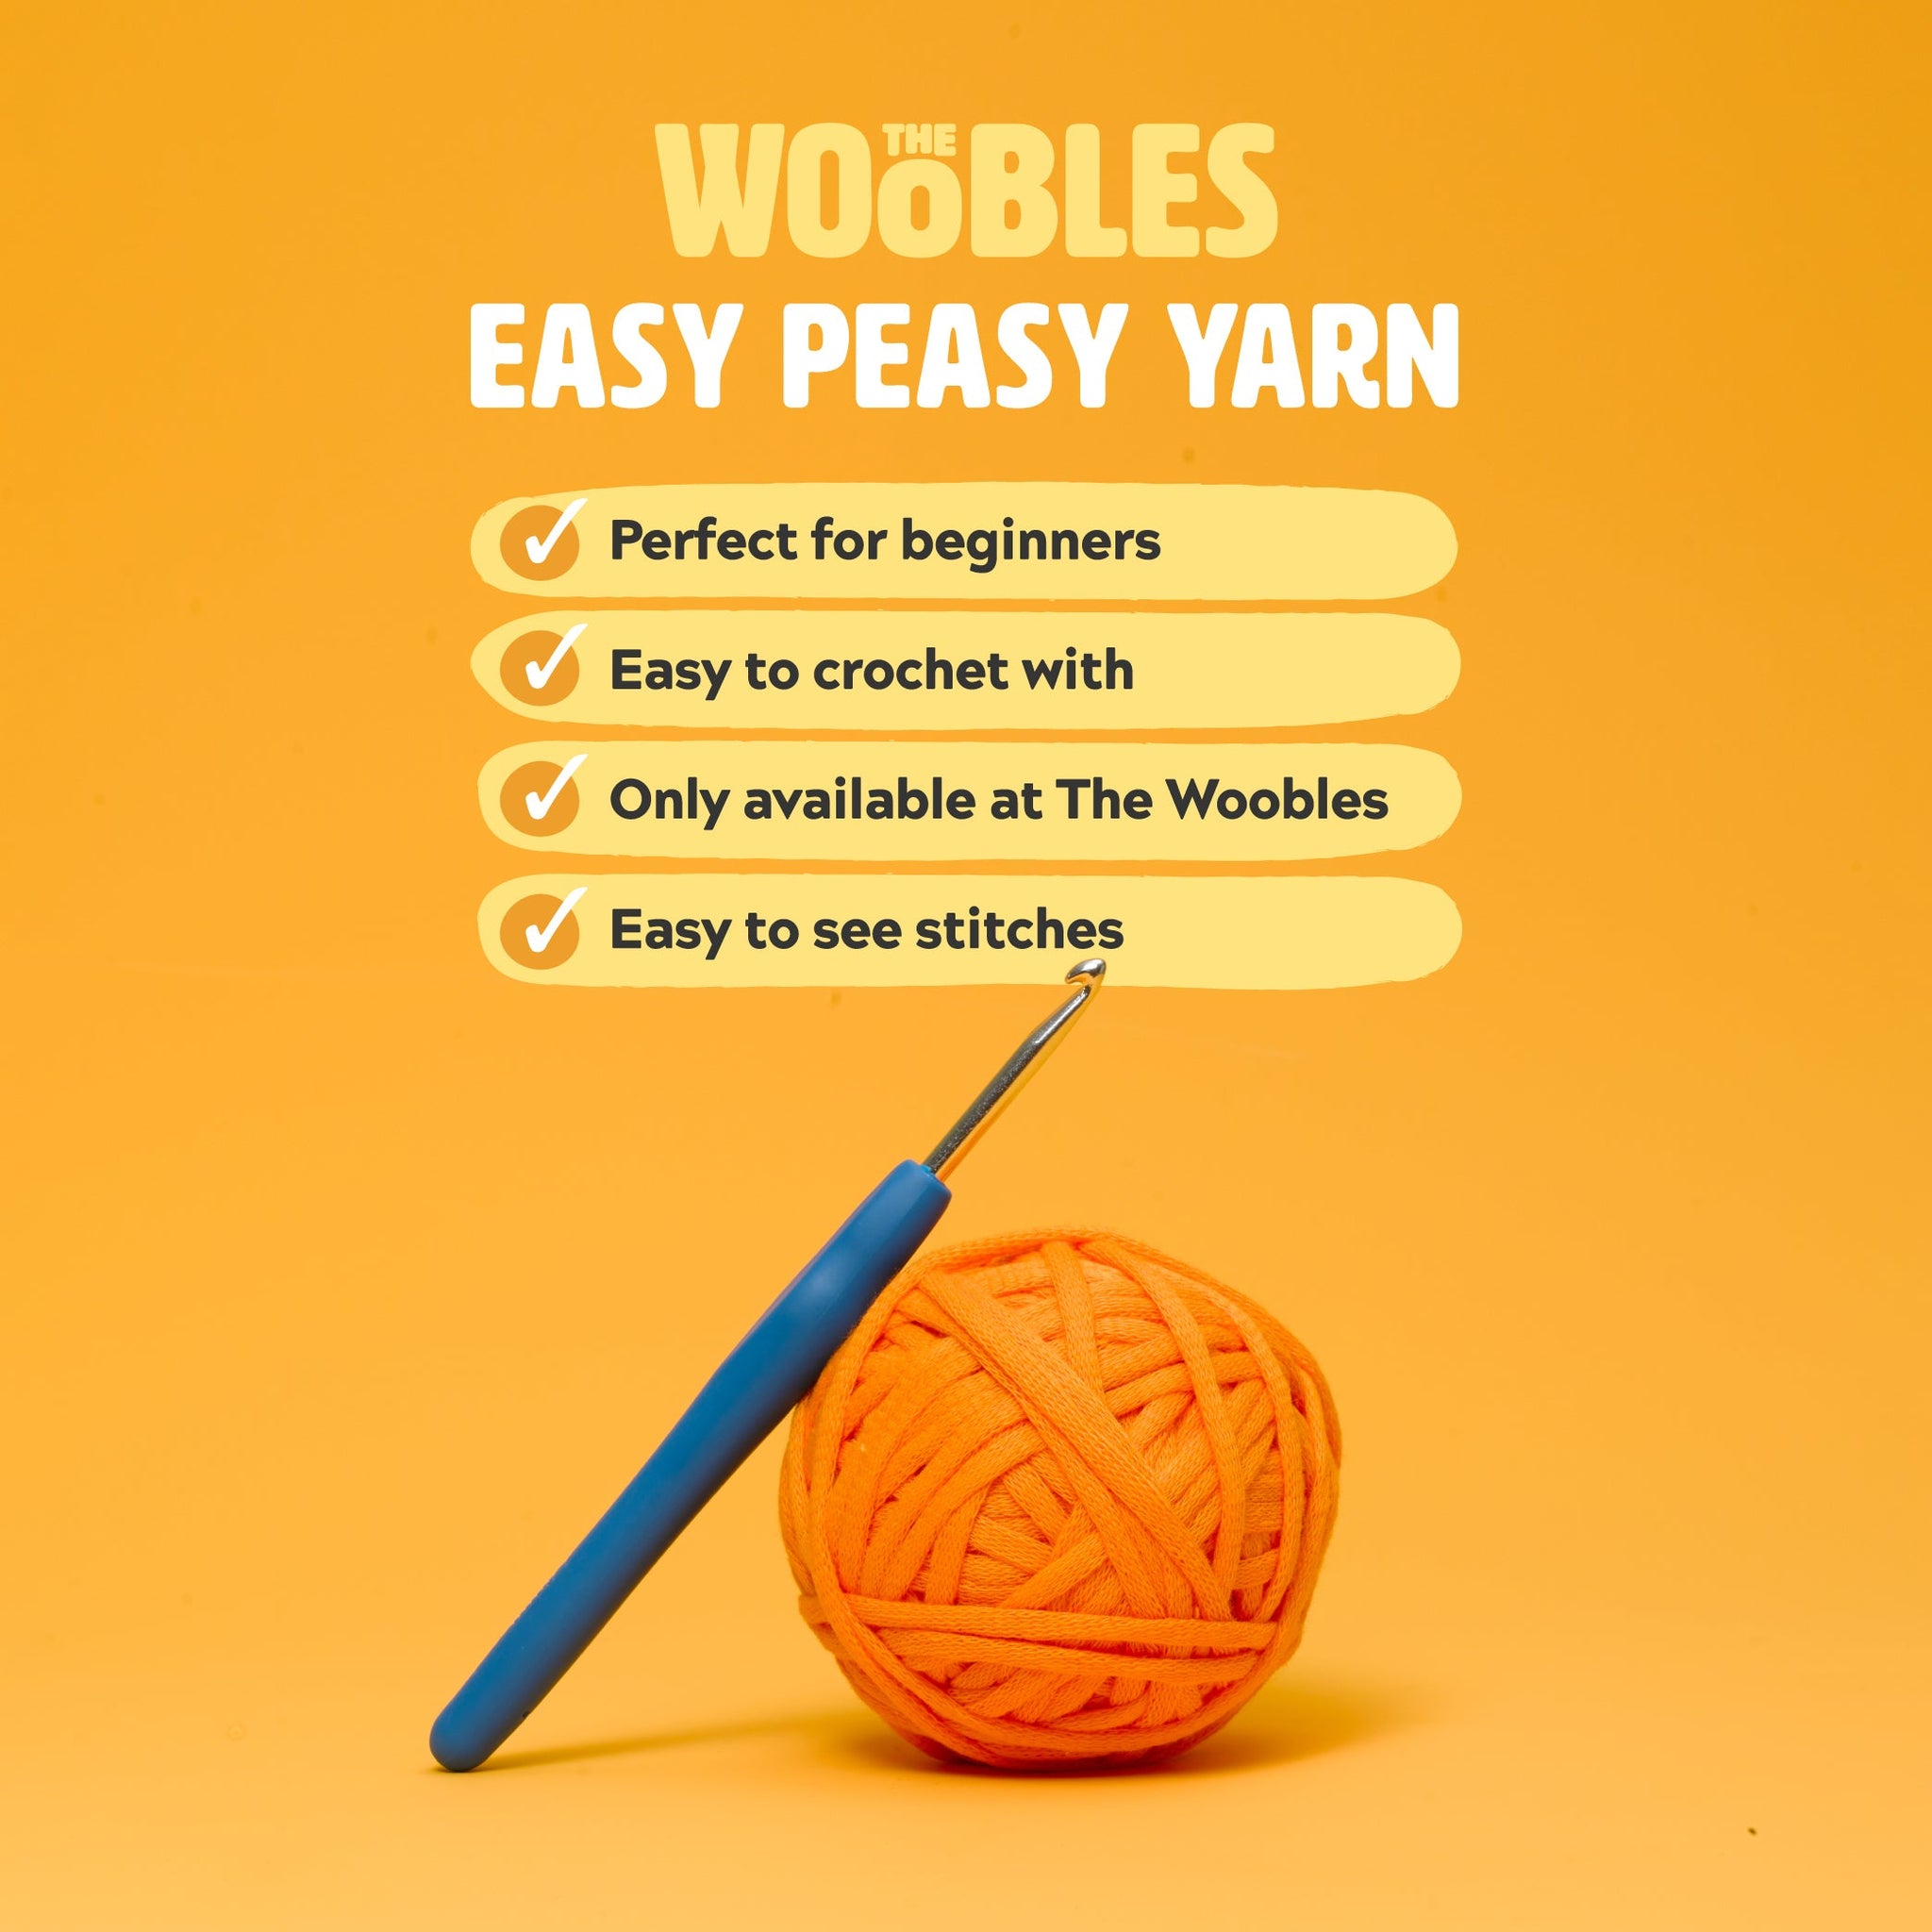 Wobbles Crochet Kit For Beginners Beginner Crochet Kit With Easy Peasy Yarn  Knitting Kit Woobles Crochet Kit DIY With Easy Peasy